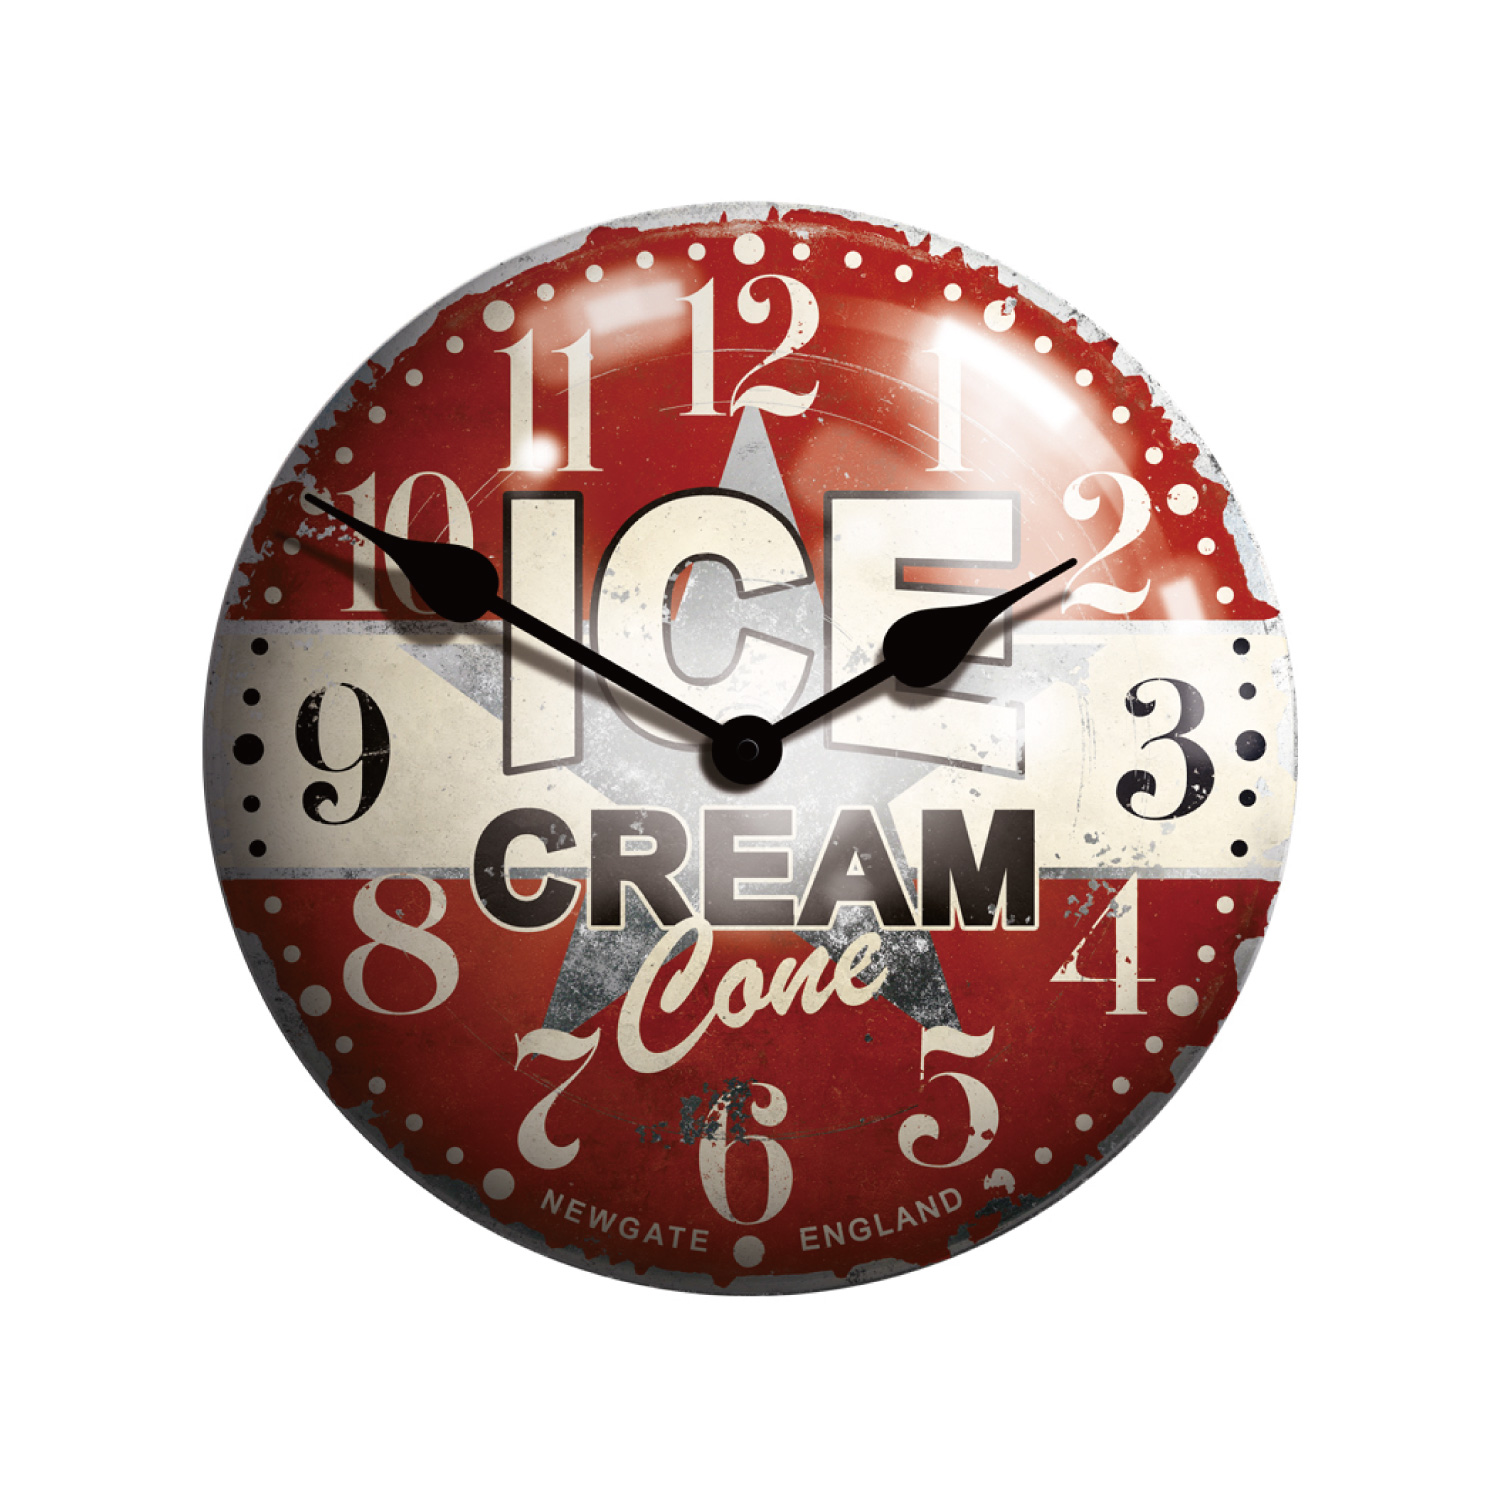 Ice cream advertising clock